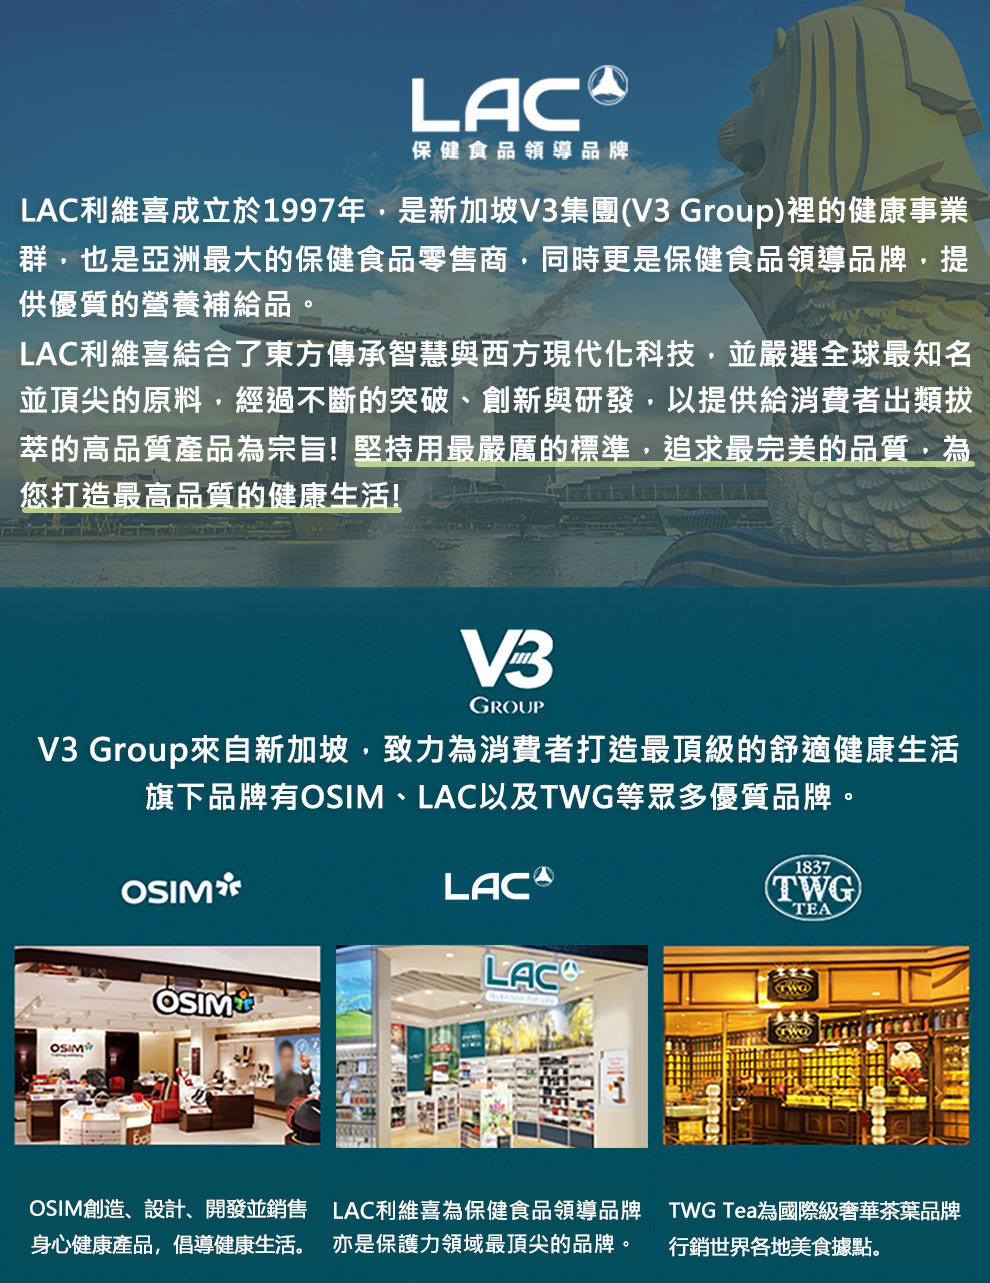 LAC利維喜成立於1997年,是新加坡V3集團V3 Group裡的健康事業